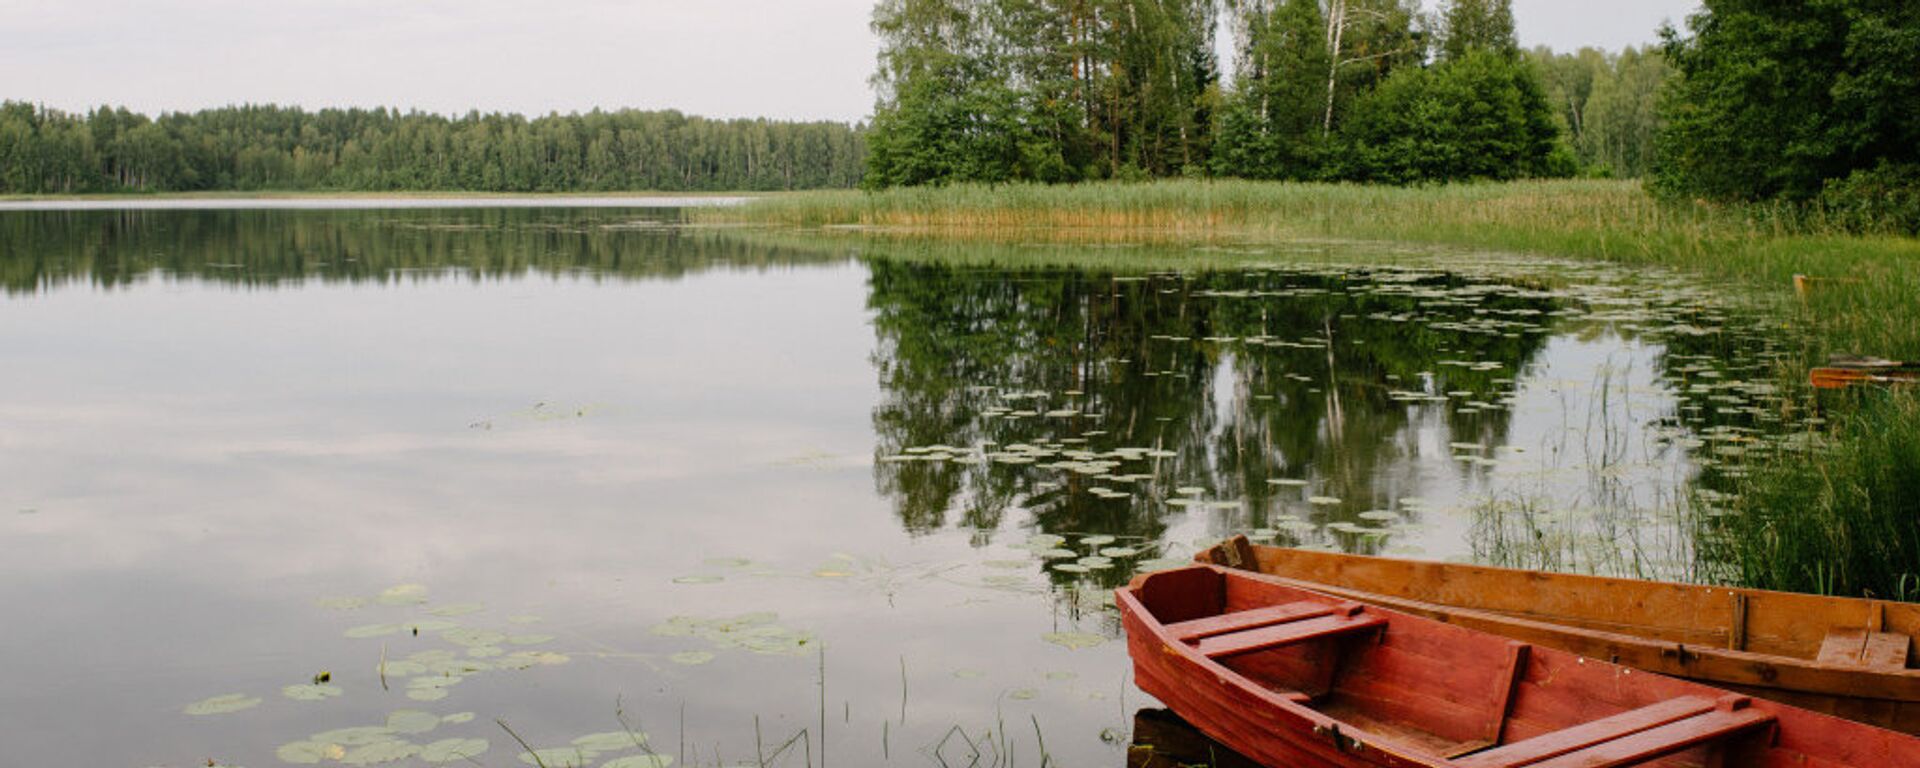 Лодки на лесном озере в Латгалии - Sputnik Латвия, 1920, 07.02.2018